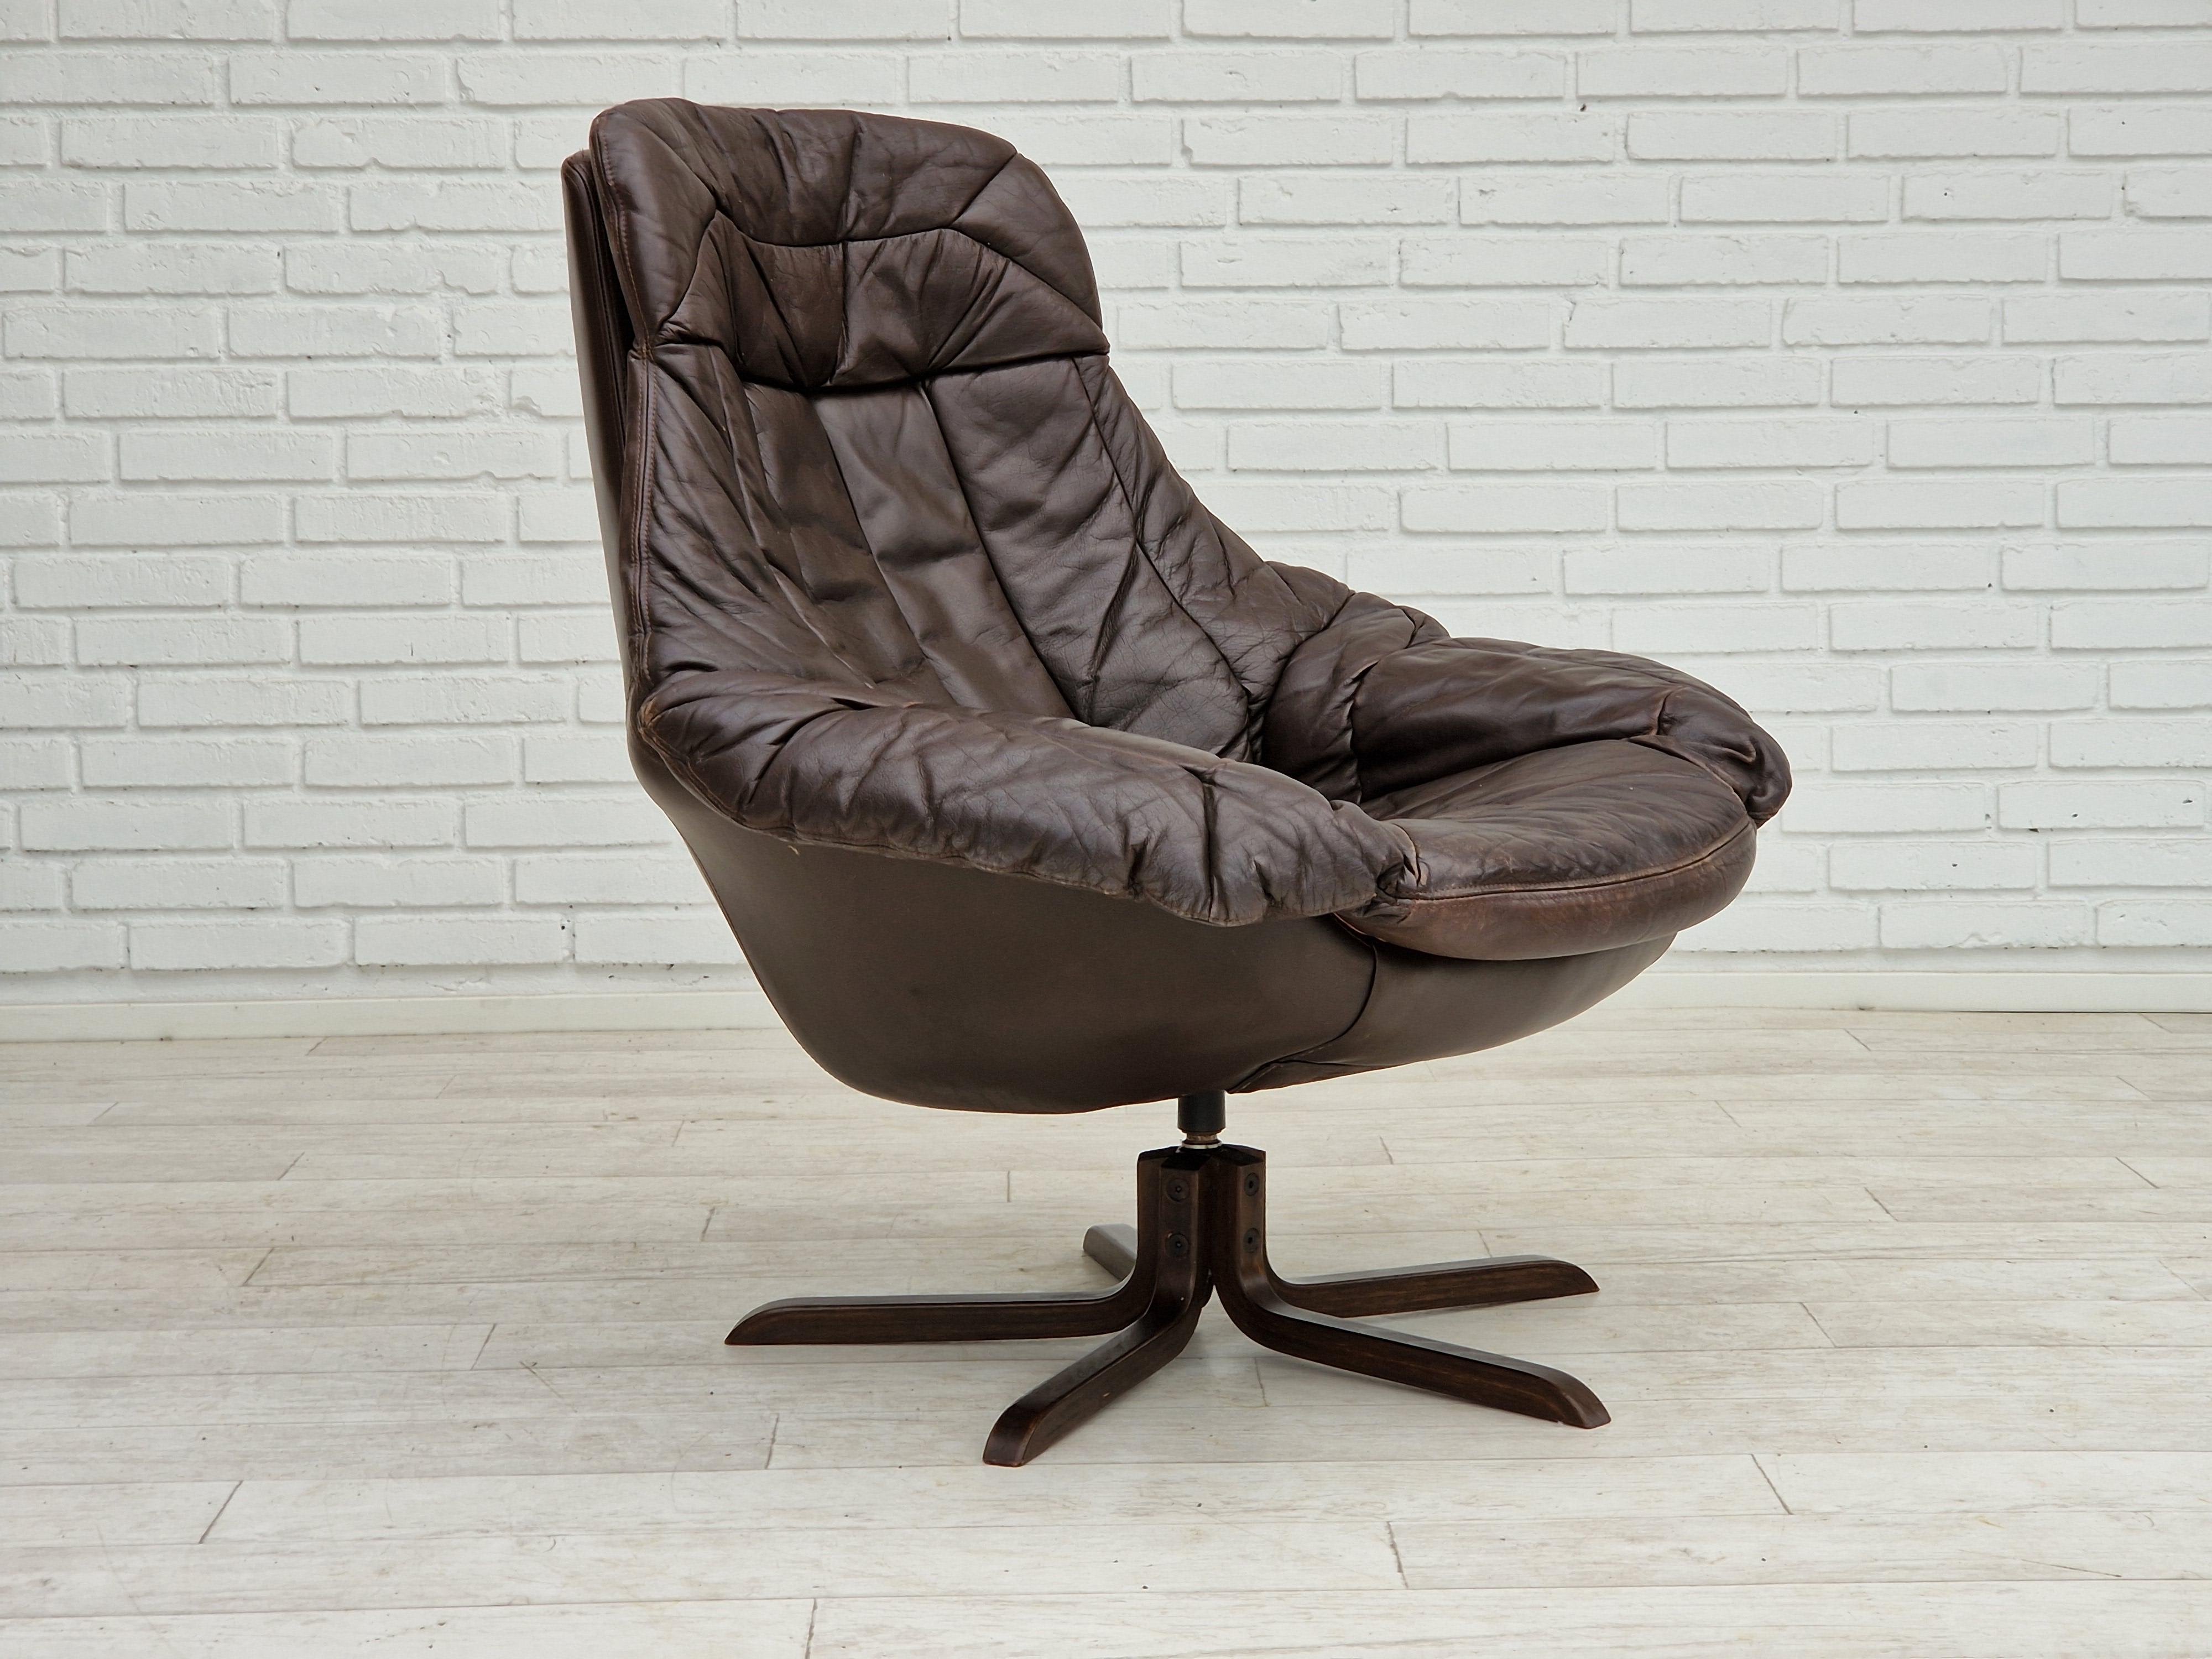 1970er Jahre, Dänisches Design von Henry Walter Klein, Sesselmodell Silhouette. Guter Originalzustand: keine Gerüche und keine Flecken. Der Stuhl dreht sich nicht, er ist fest installiert. Hergestellt vom dänischen Möbelhersteller Bramin Møbler um